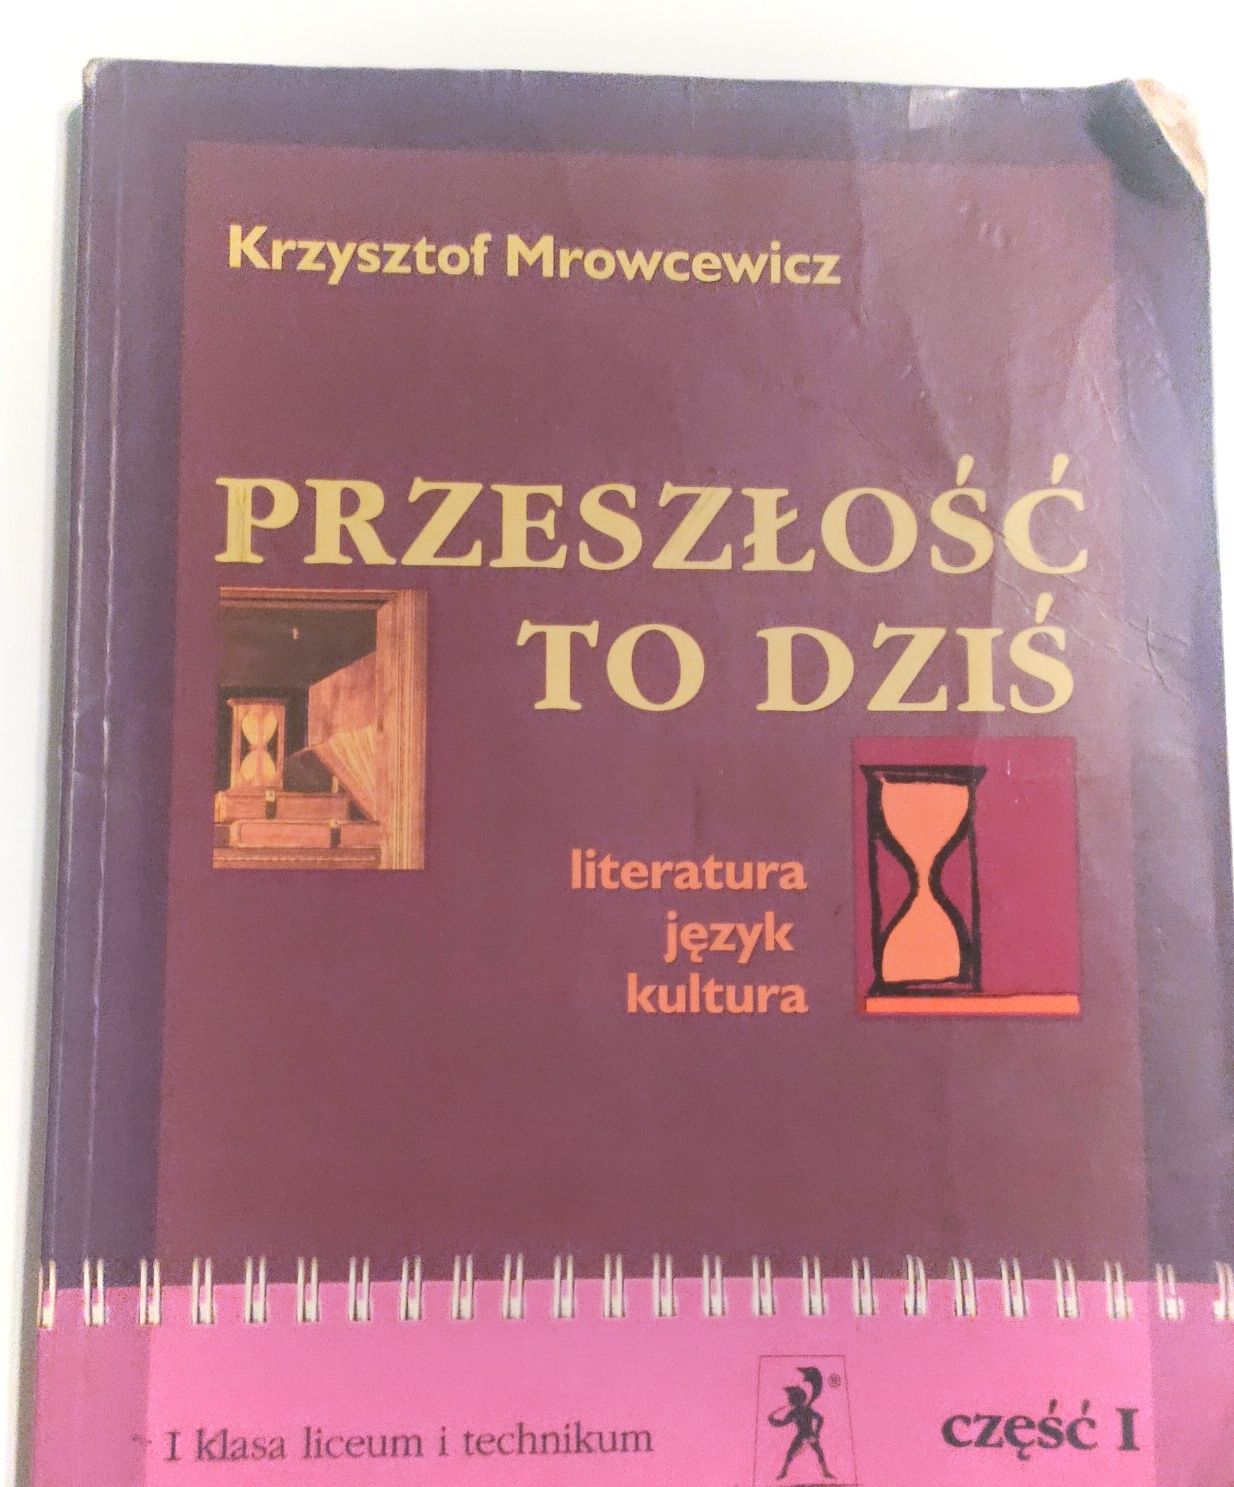 Krzysztof Mrocewicz "Przeszłość to dziś" I klasa liceum i technikum c1